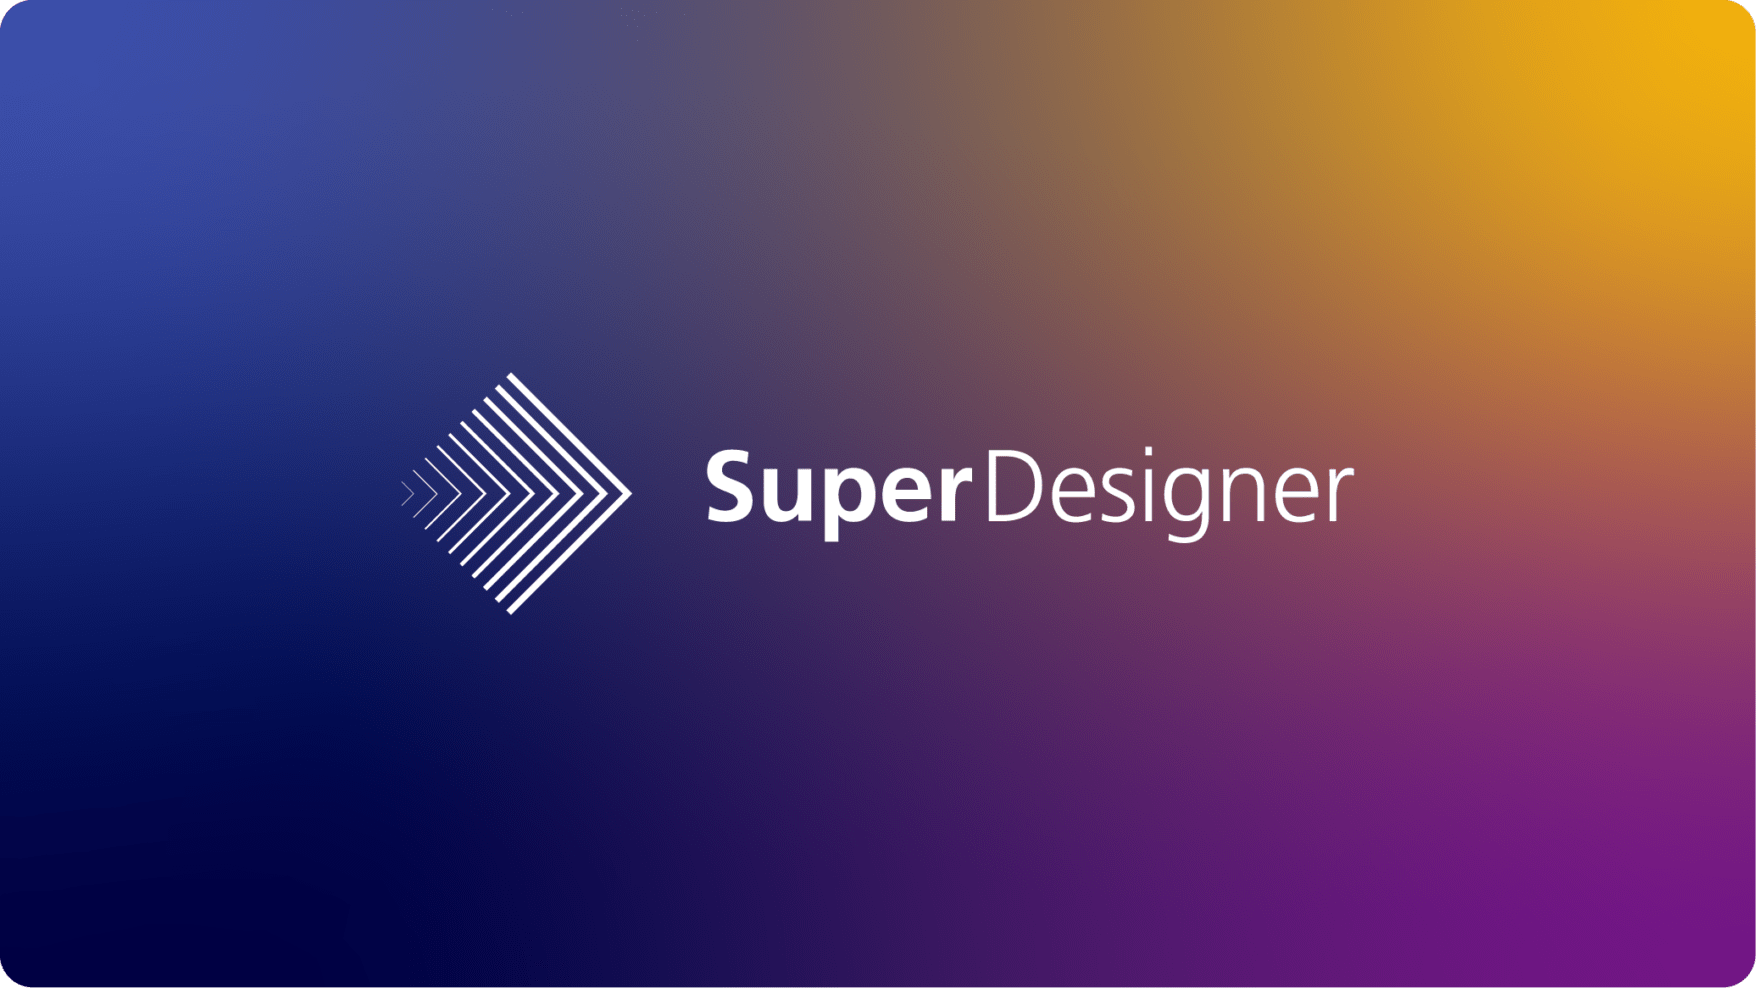 Super Designer